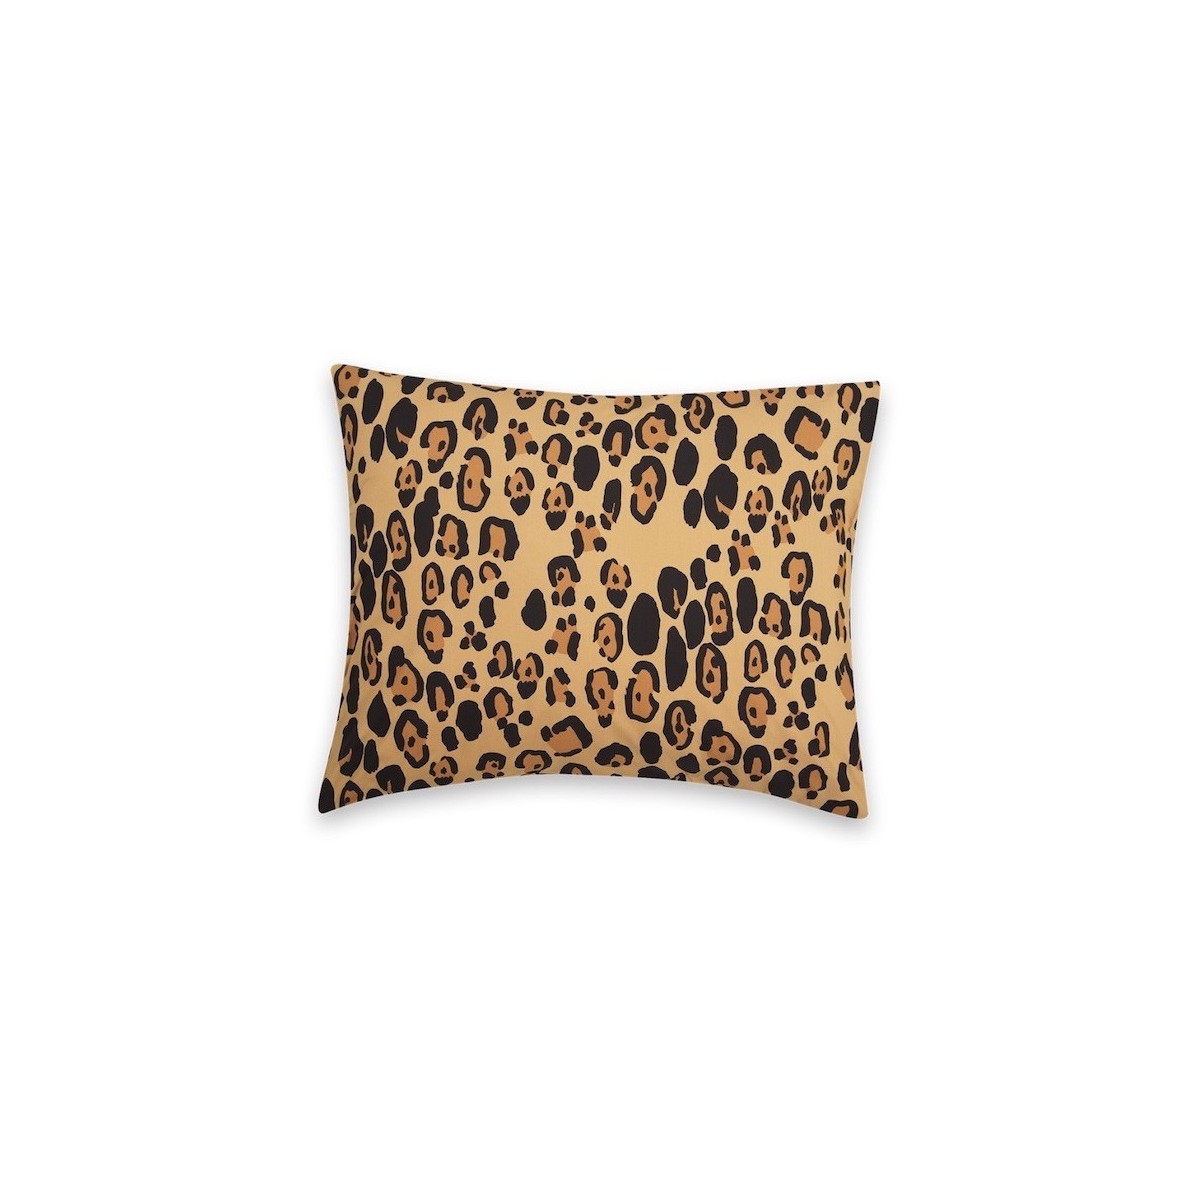 50x75cm - Leopard - pillow case EU